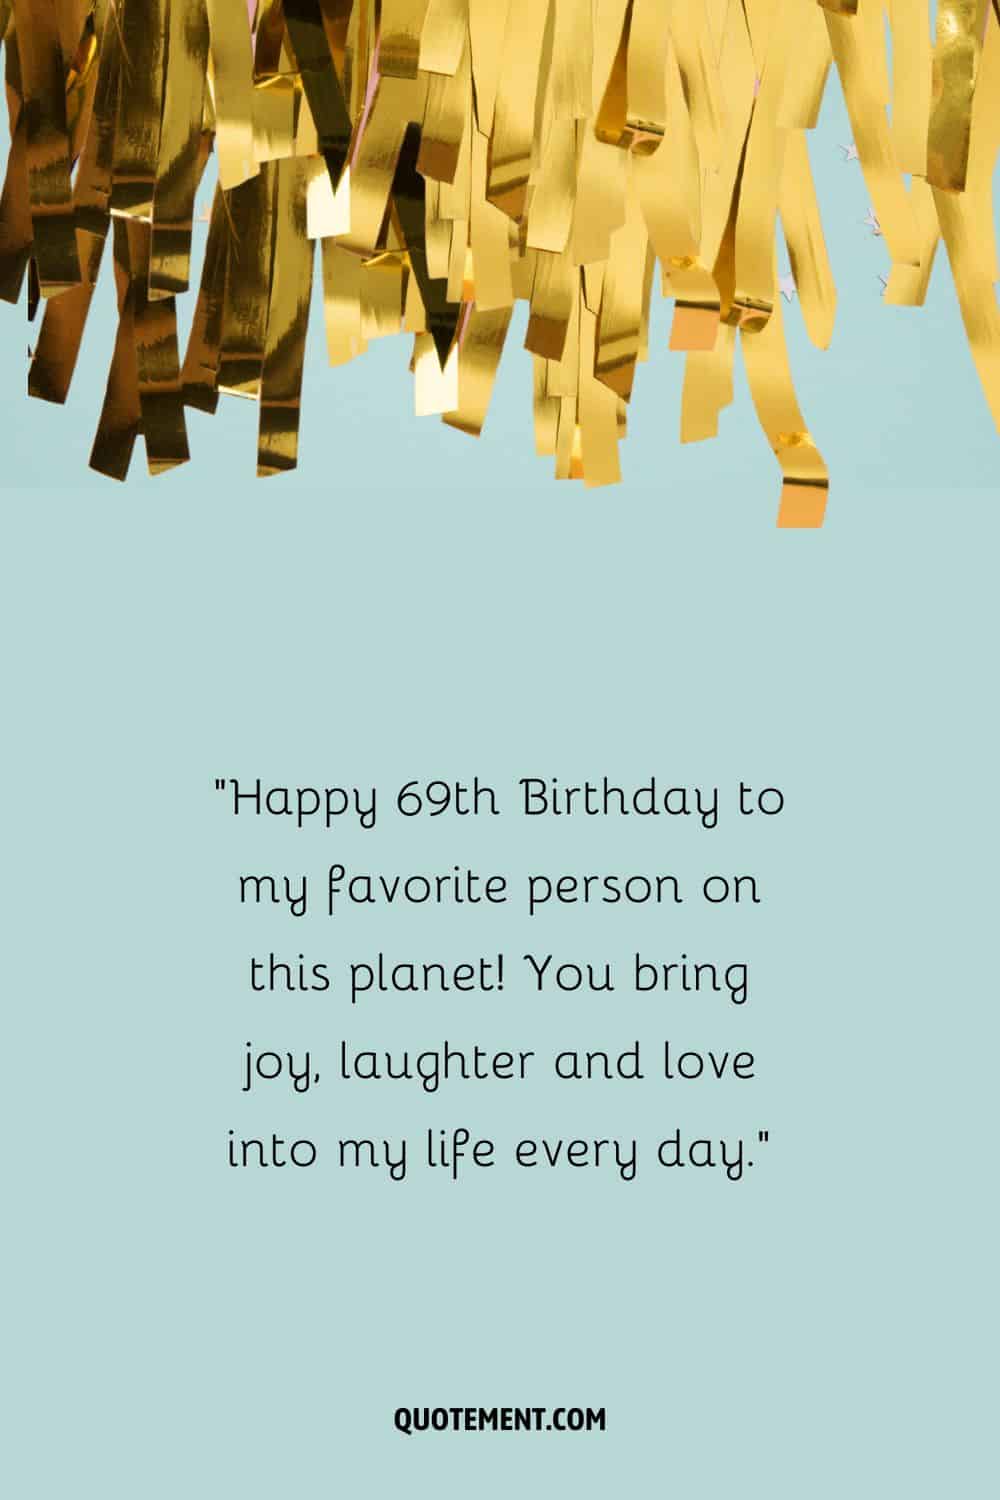 ¡Feliz 69 cumpleaños a mi persona favorita en este planeta! Aportas alegría, risas y amor a mi vida cada día.